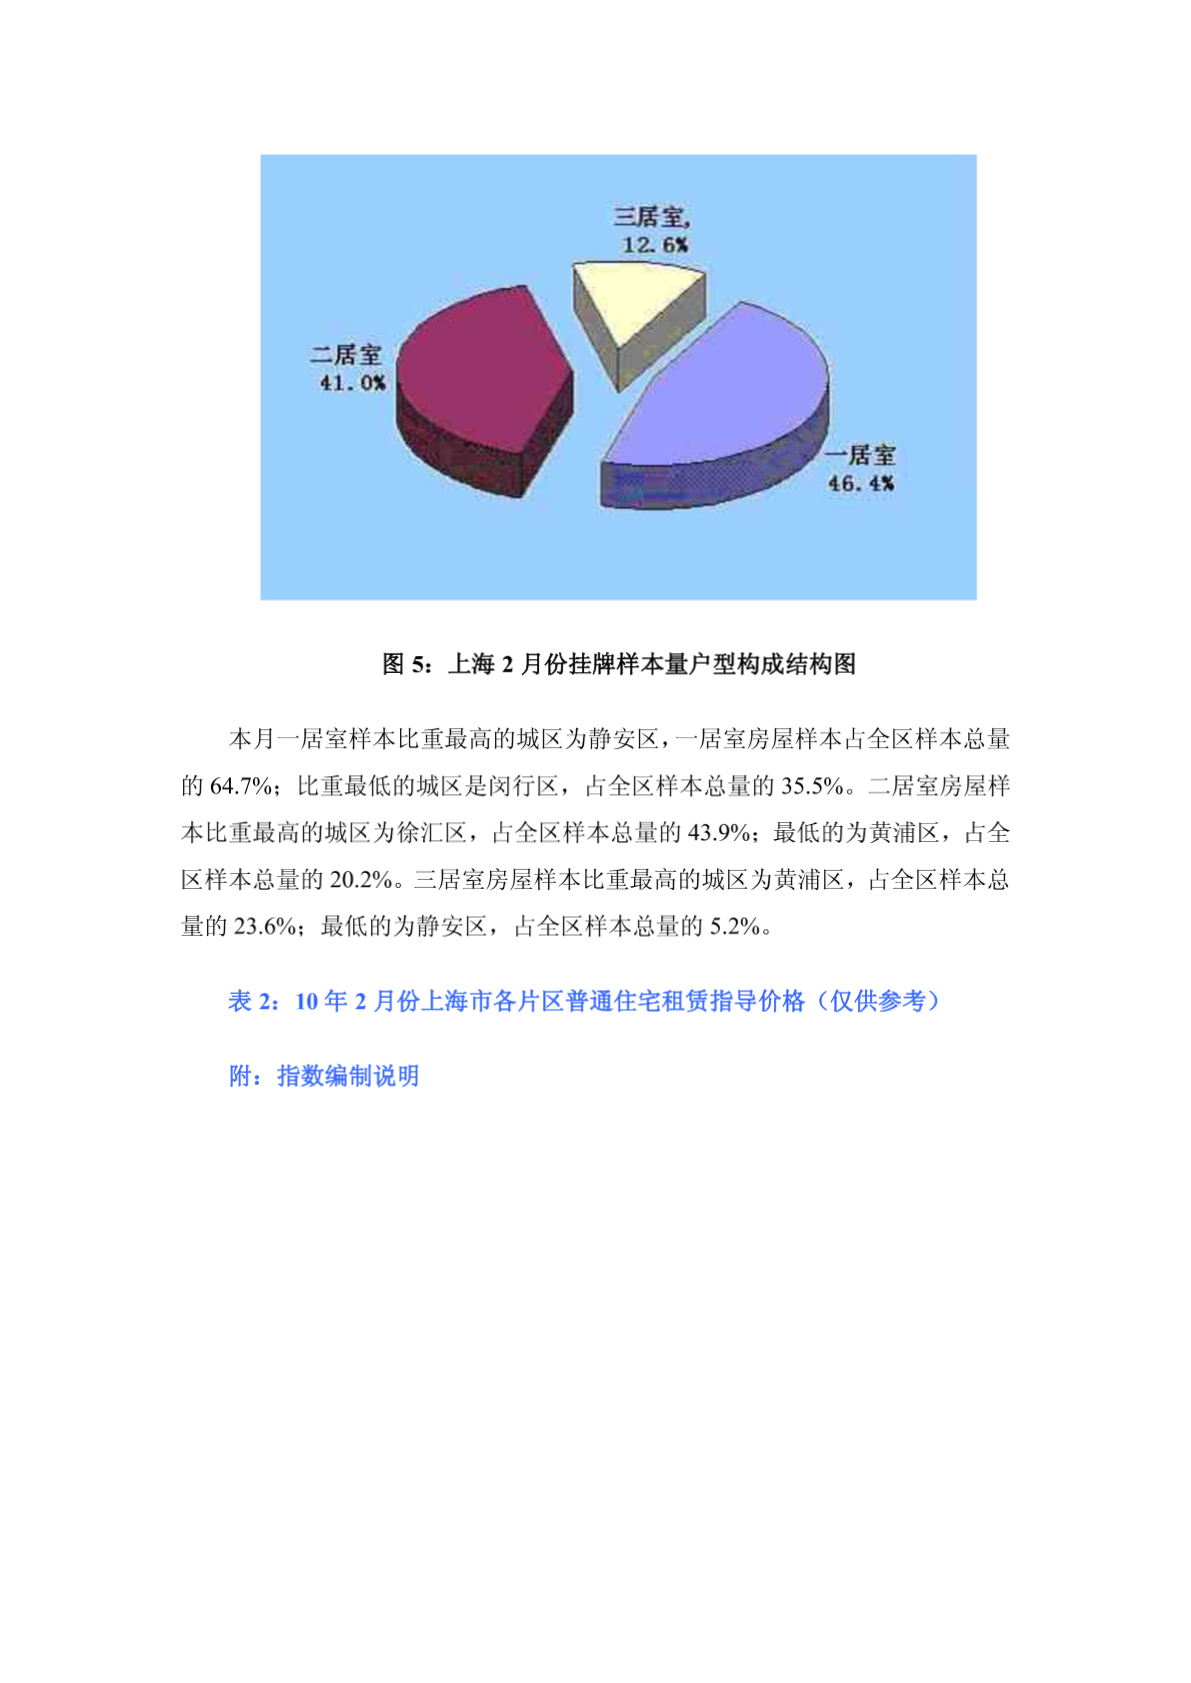 2010年2月上海普宅租赁价格指数报告-7DOC-图一